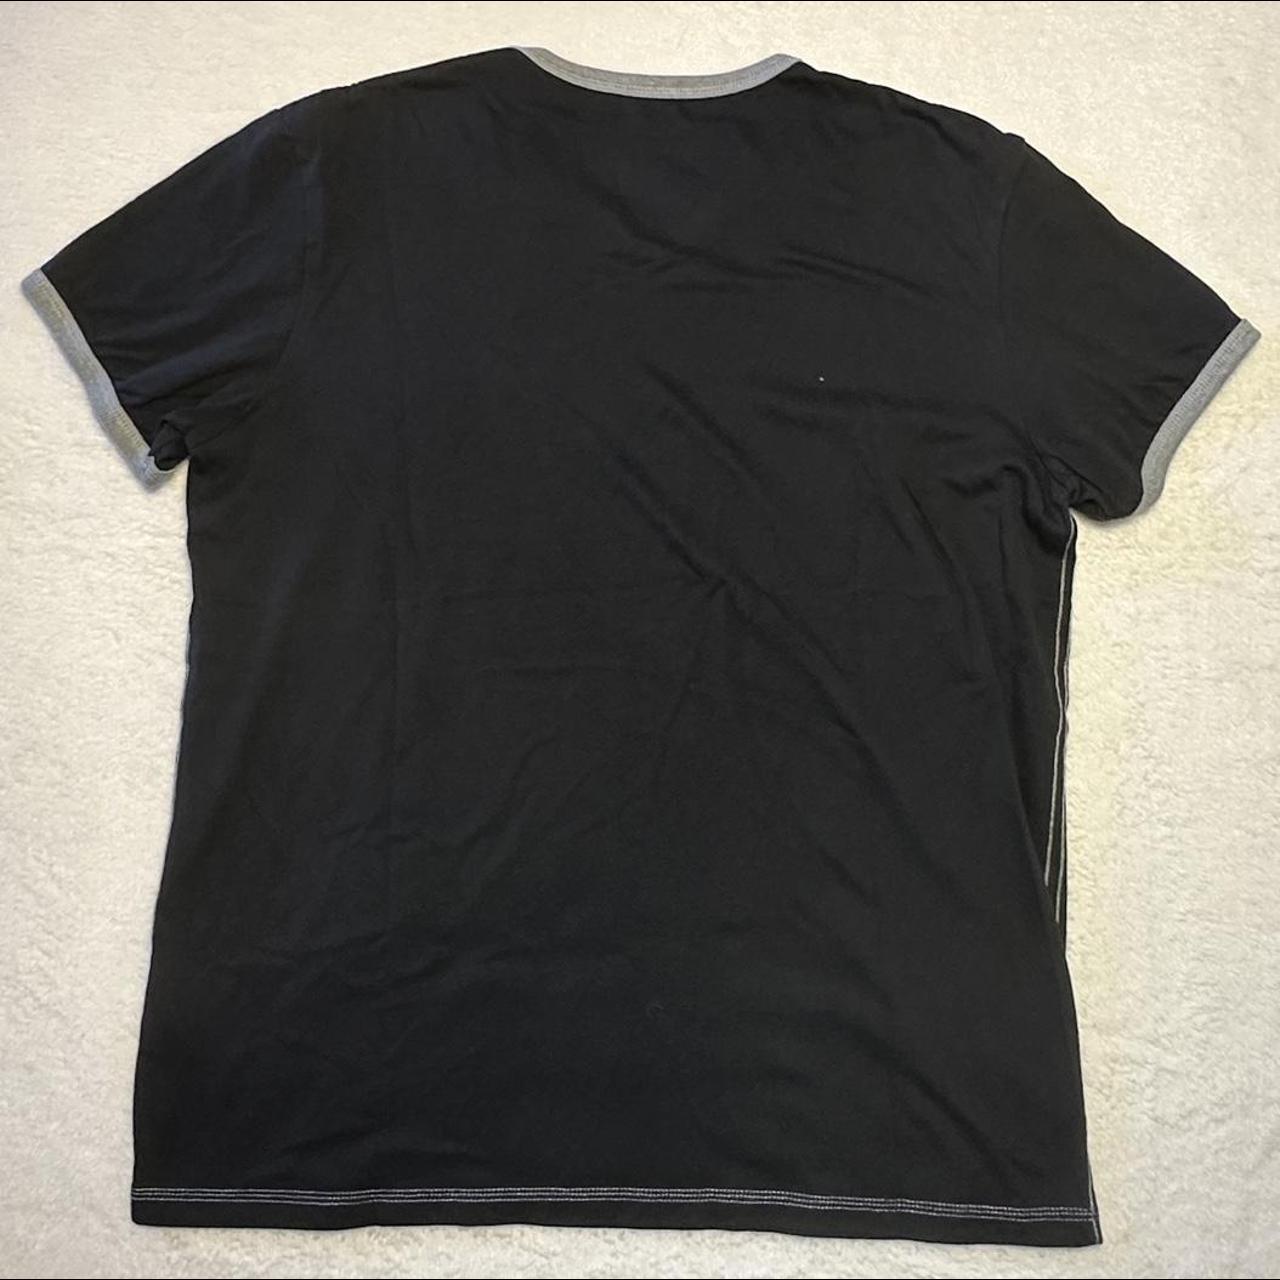 Y2k Black T-Shirt - men’s size L - $6.20 for... - Depop